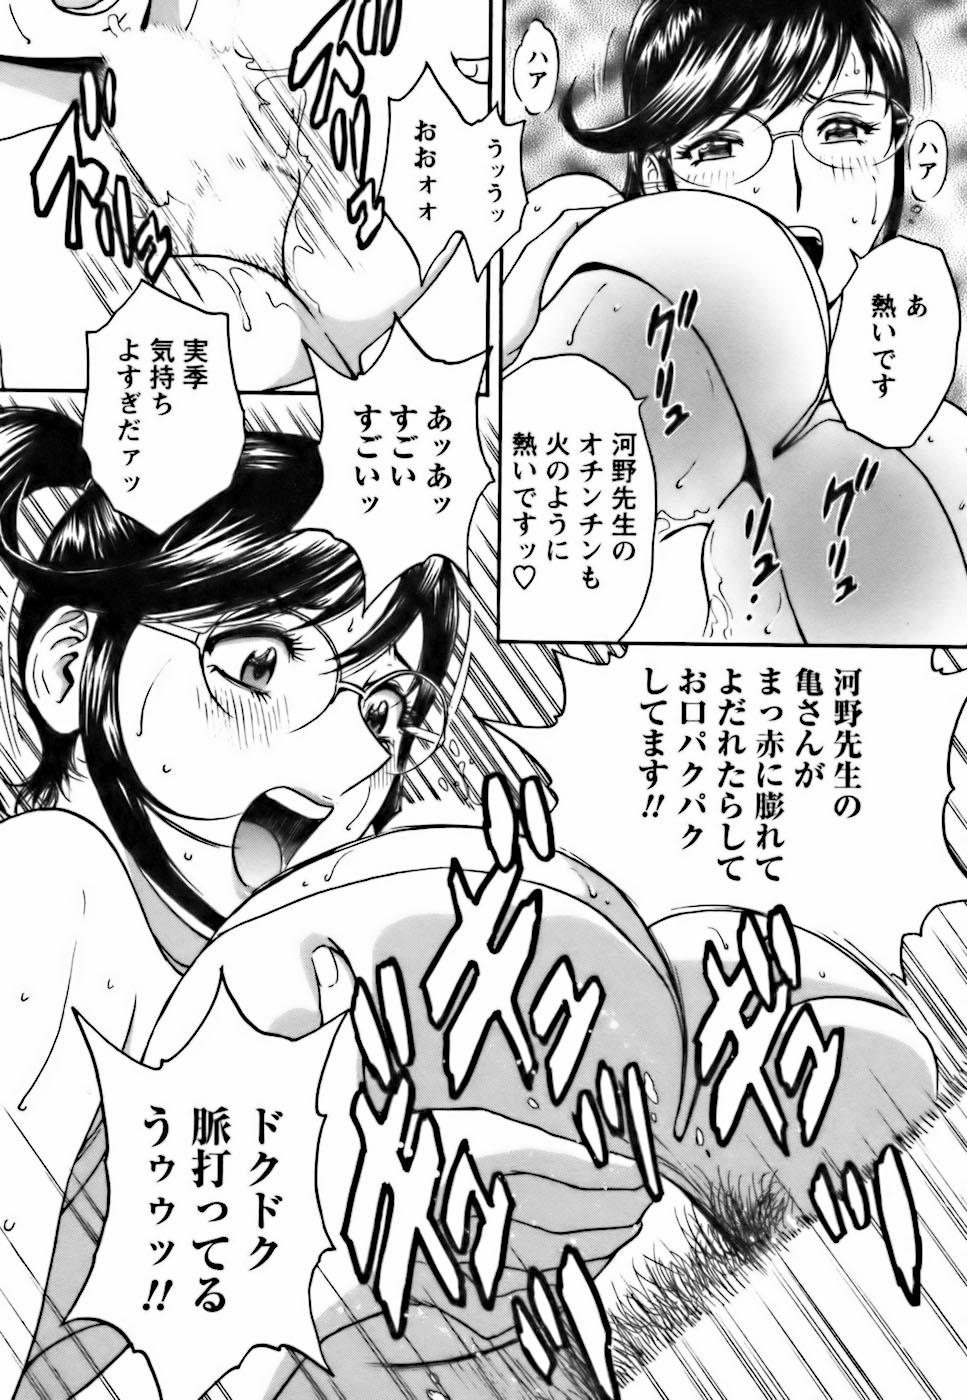 [Hidemaru] Mo-Retsu! Boin Sensei (Boing Boing Teacher) Vol.3 61